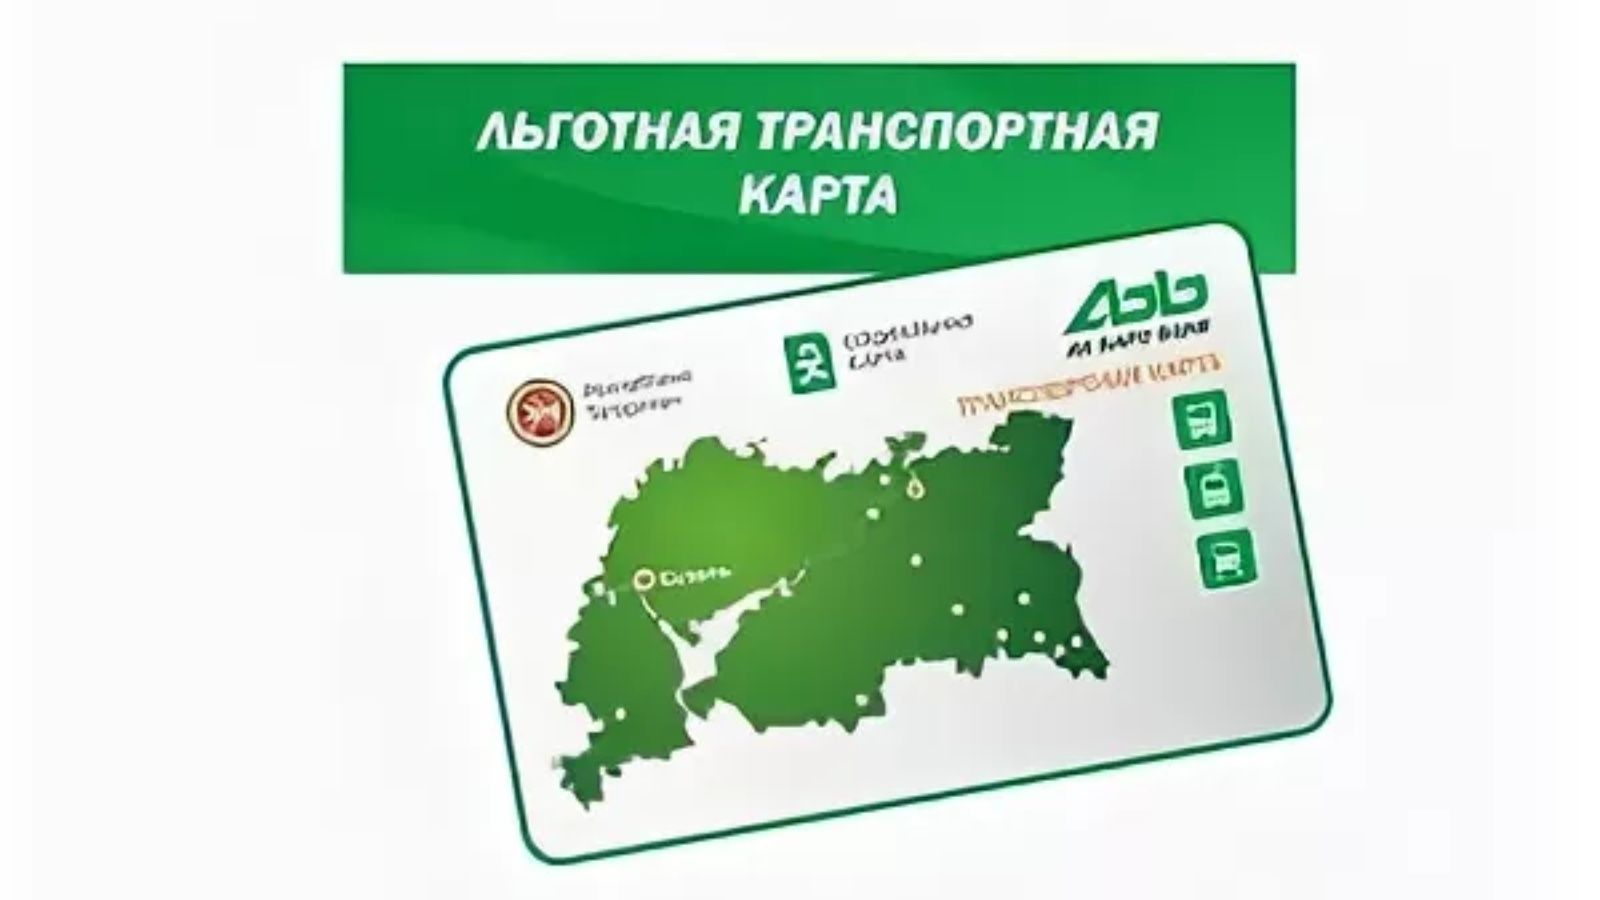 Транспортная компания транспортная карта